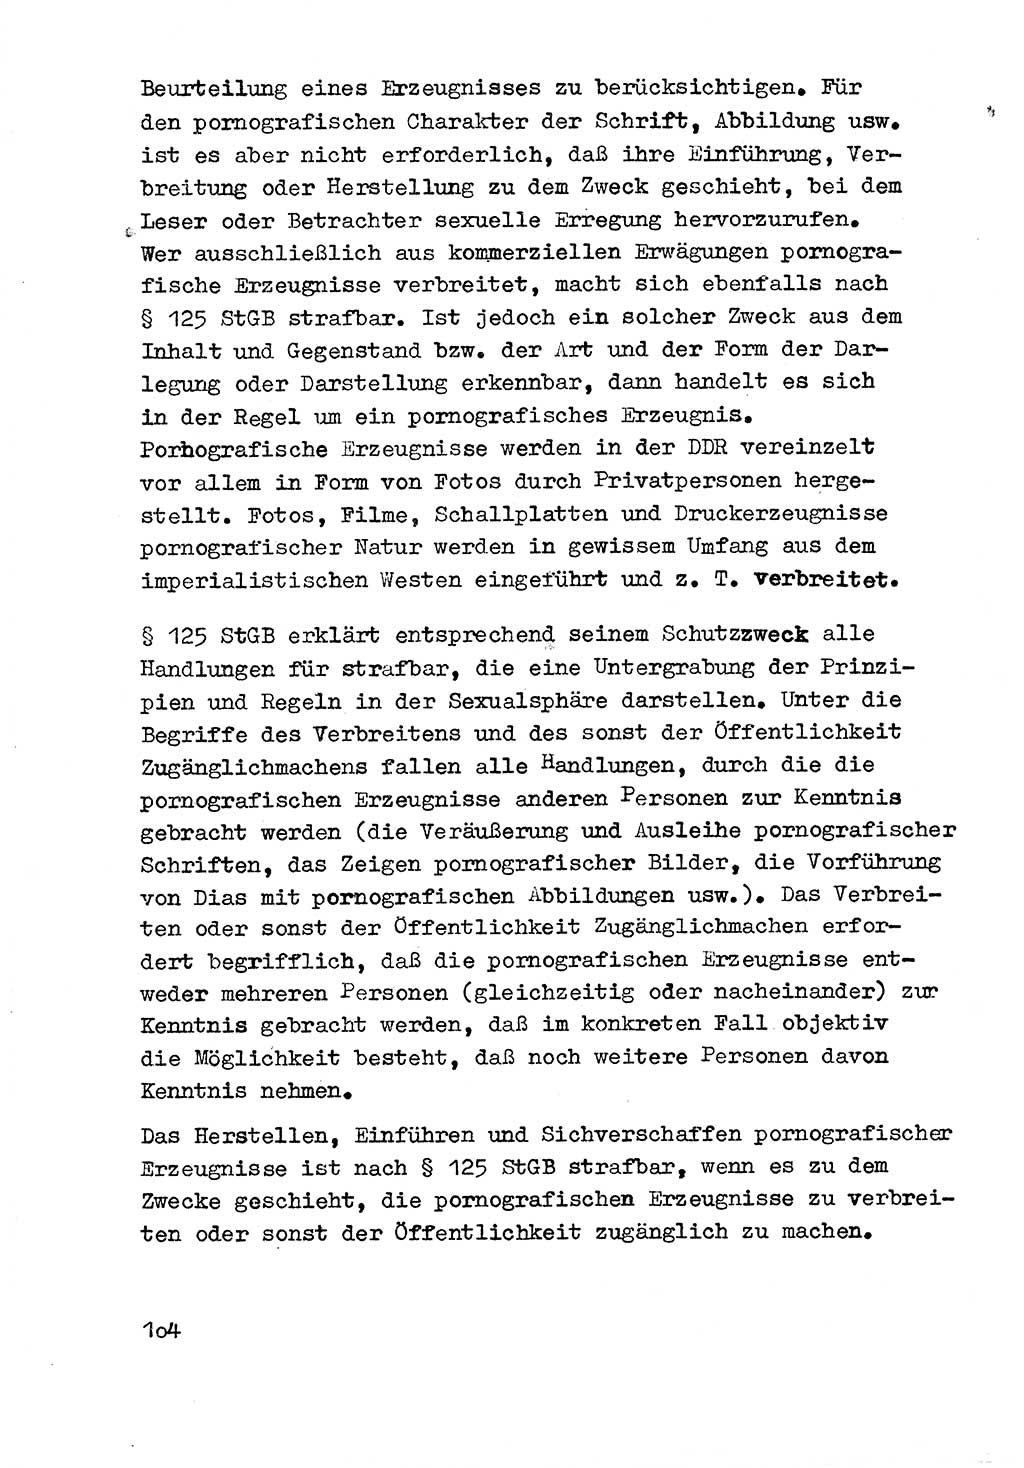 Strafrecht der DDR (Deutsche Demokratische Republik), Besonderer Teil, Lehrmaterial, Heft 3 1969, Seite 104 (Strafr. DDR BT Lehrmat. H. 3 1969, S. 104)